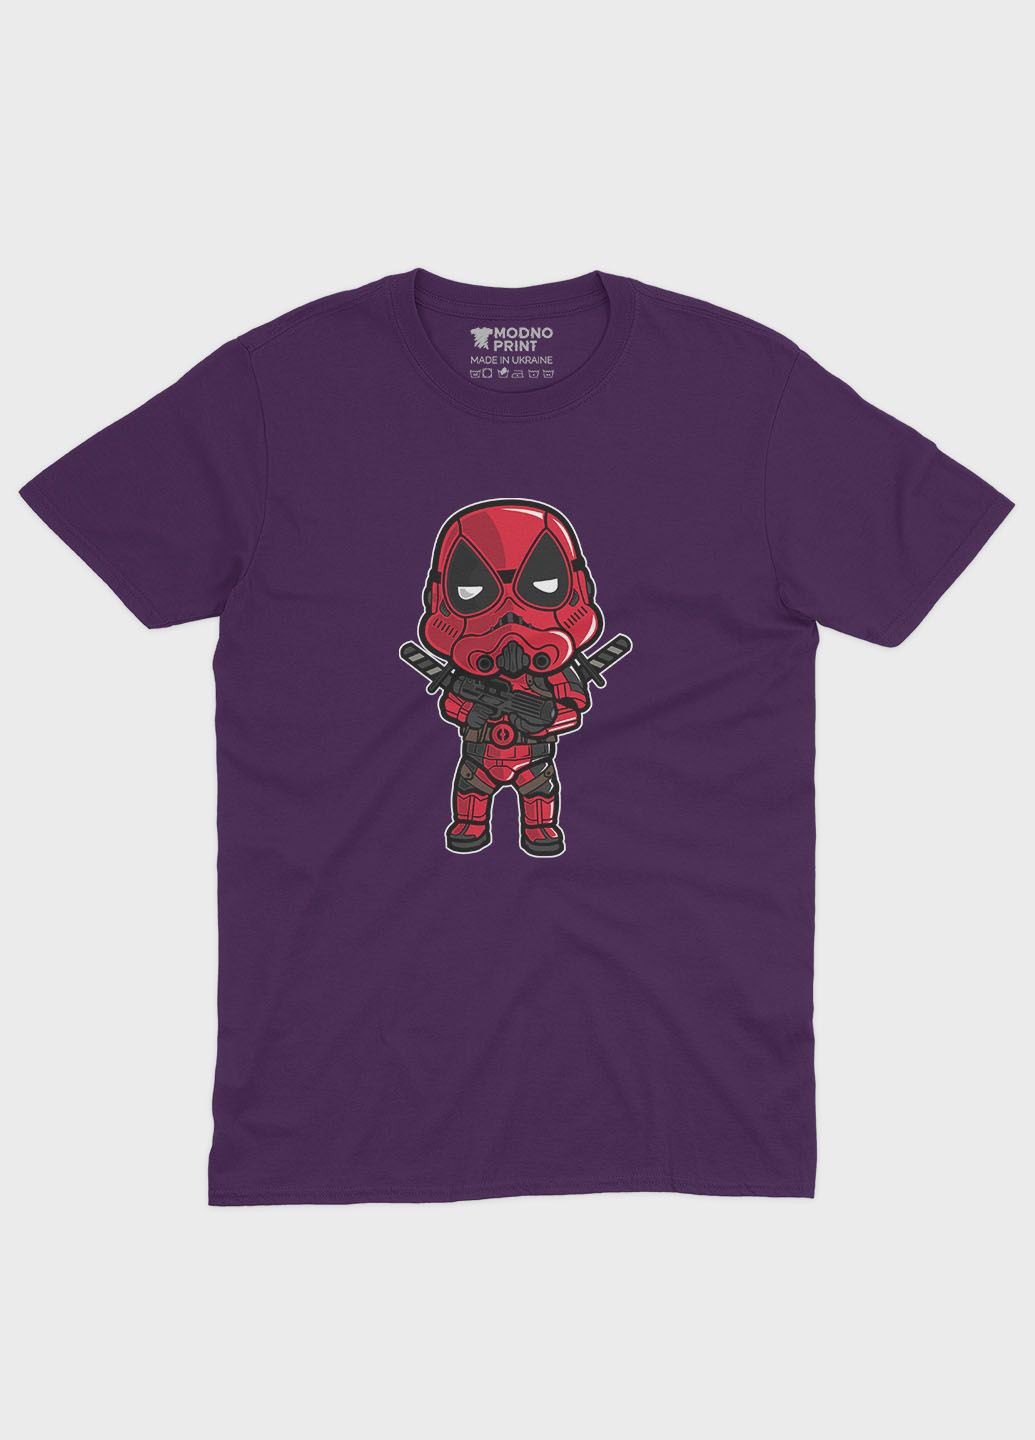 Фіолетова демісезонна футболка для хлопчика з принтом антигероя - дедпул (ts001-1-dby-006-015-017-b) Modno